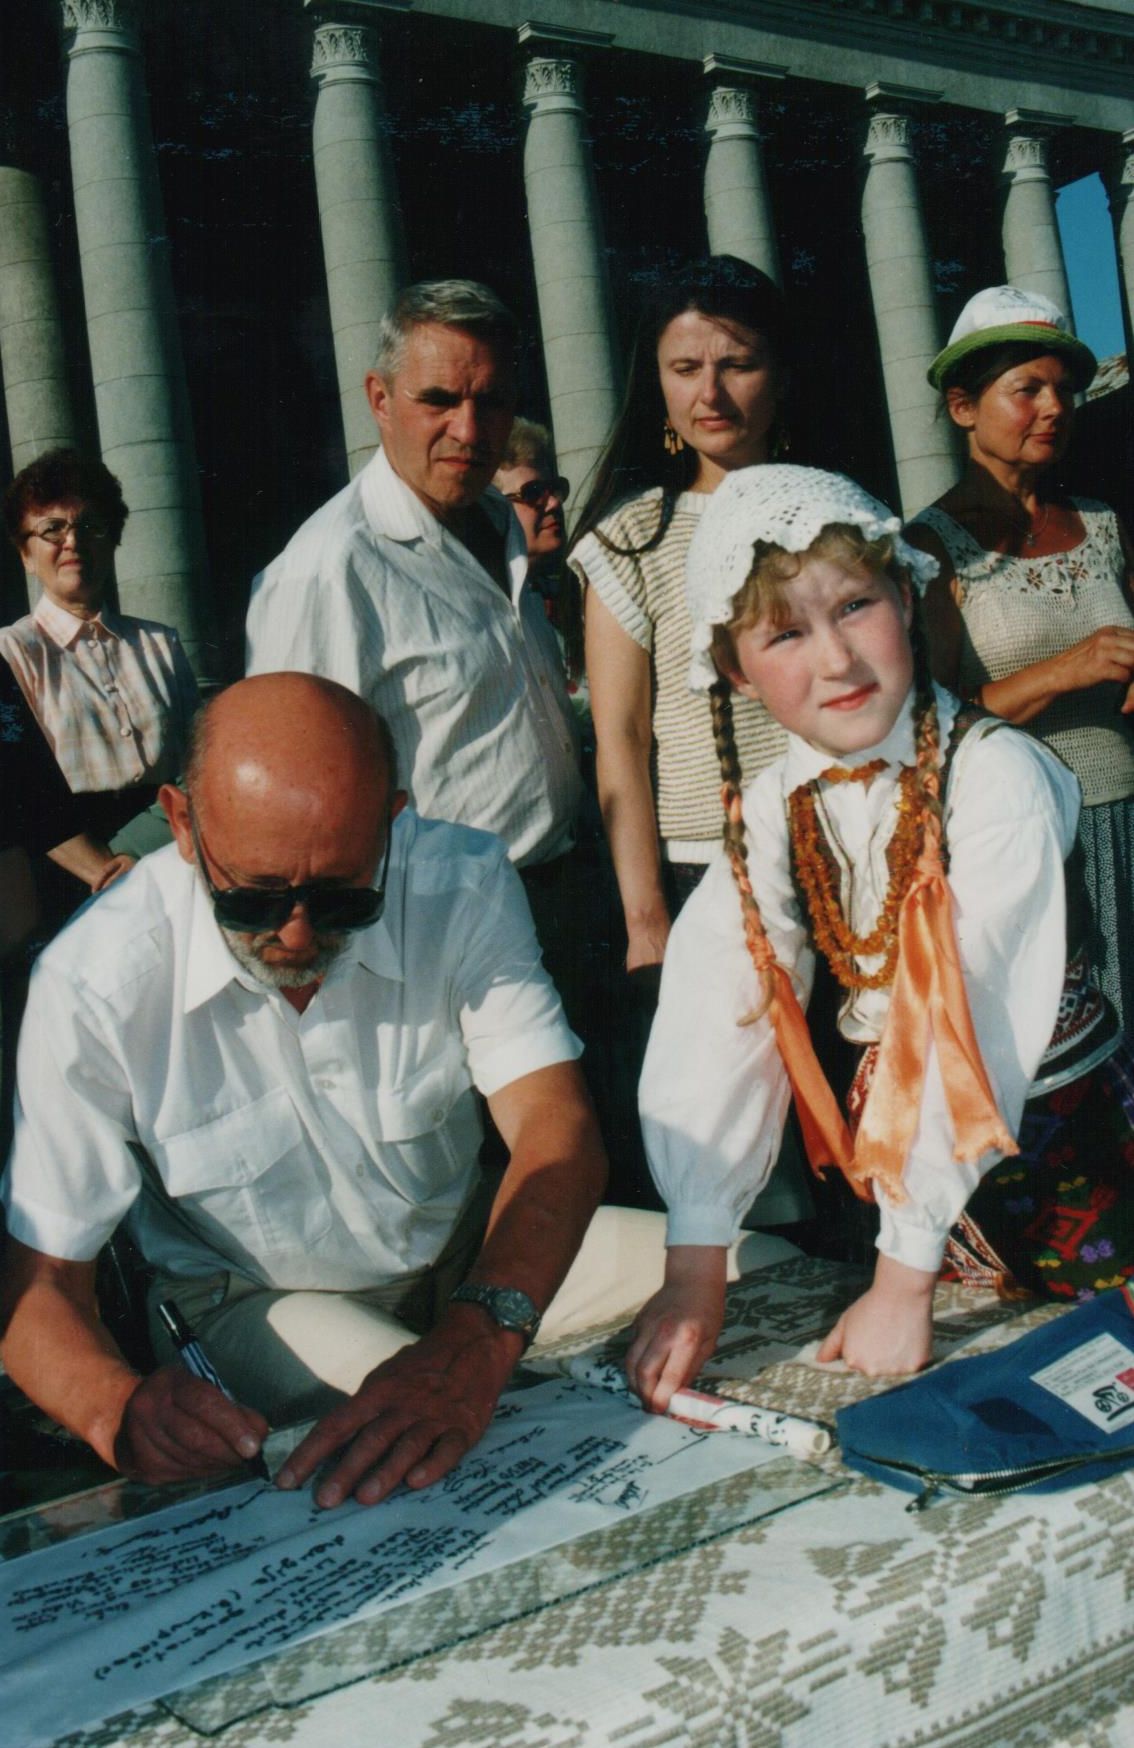 G. Ilgūno parašas aplink pasaulį dviračiais keliaujančių lietuvių taikos juostoje. 1998 m. liepos 26 d., Vilnius, Nepriklausomybės aikštė.